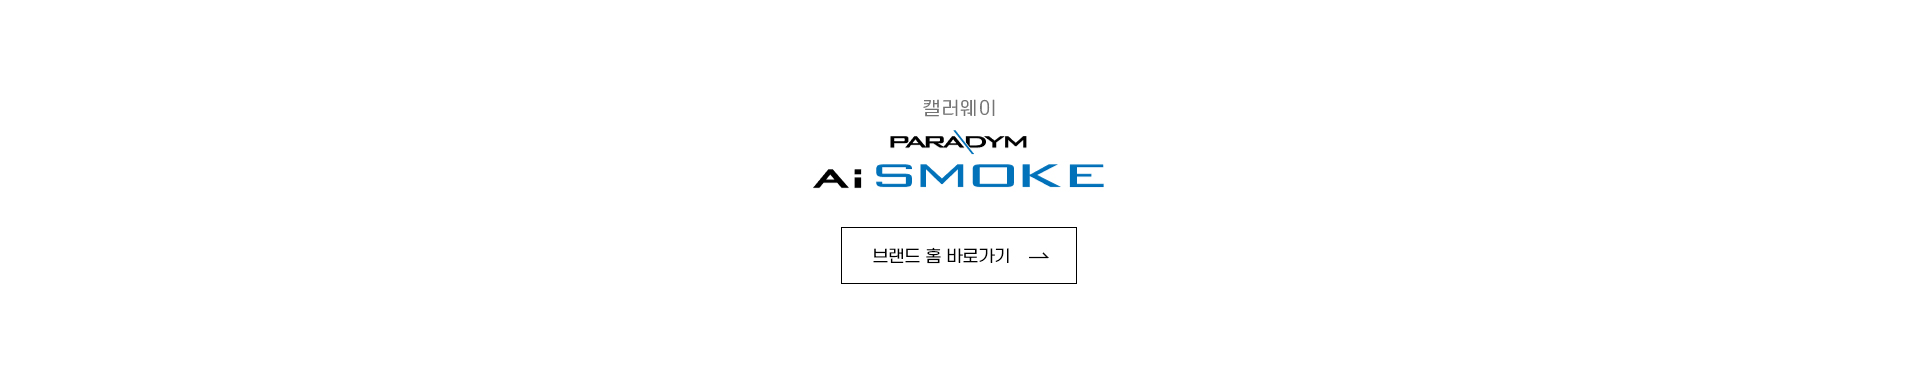 Ai-SMOKE_02.jpg